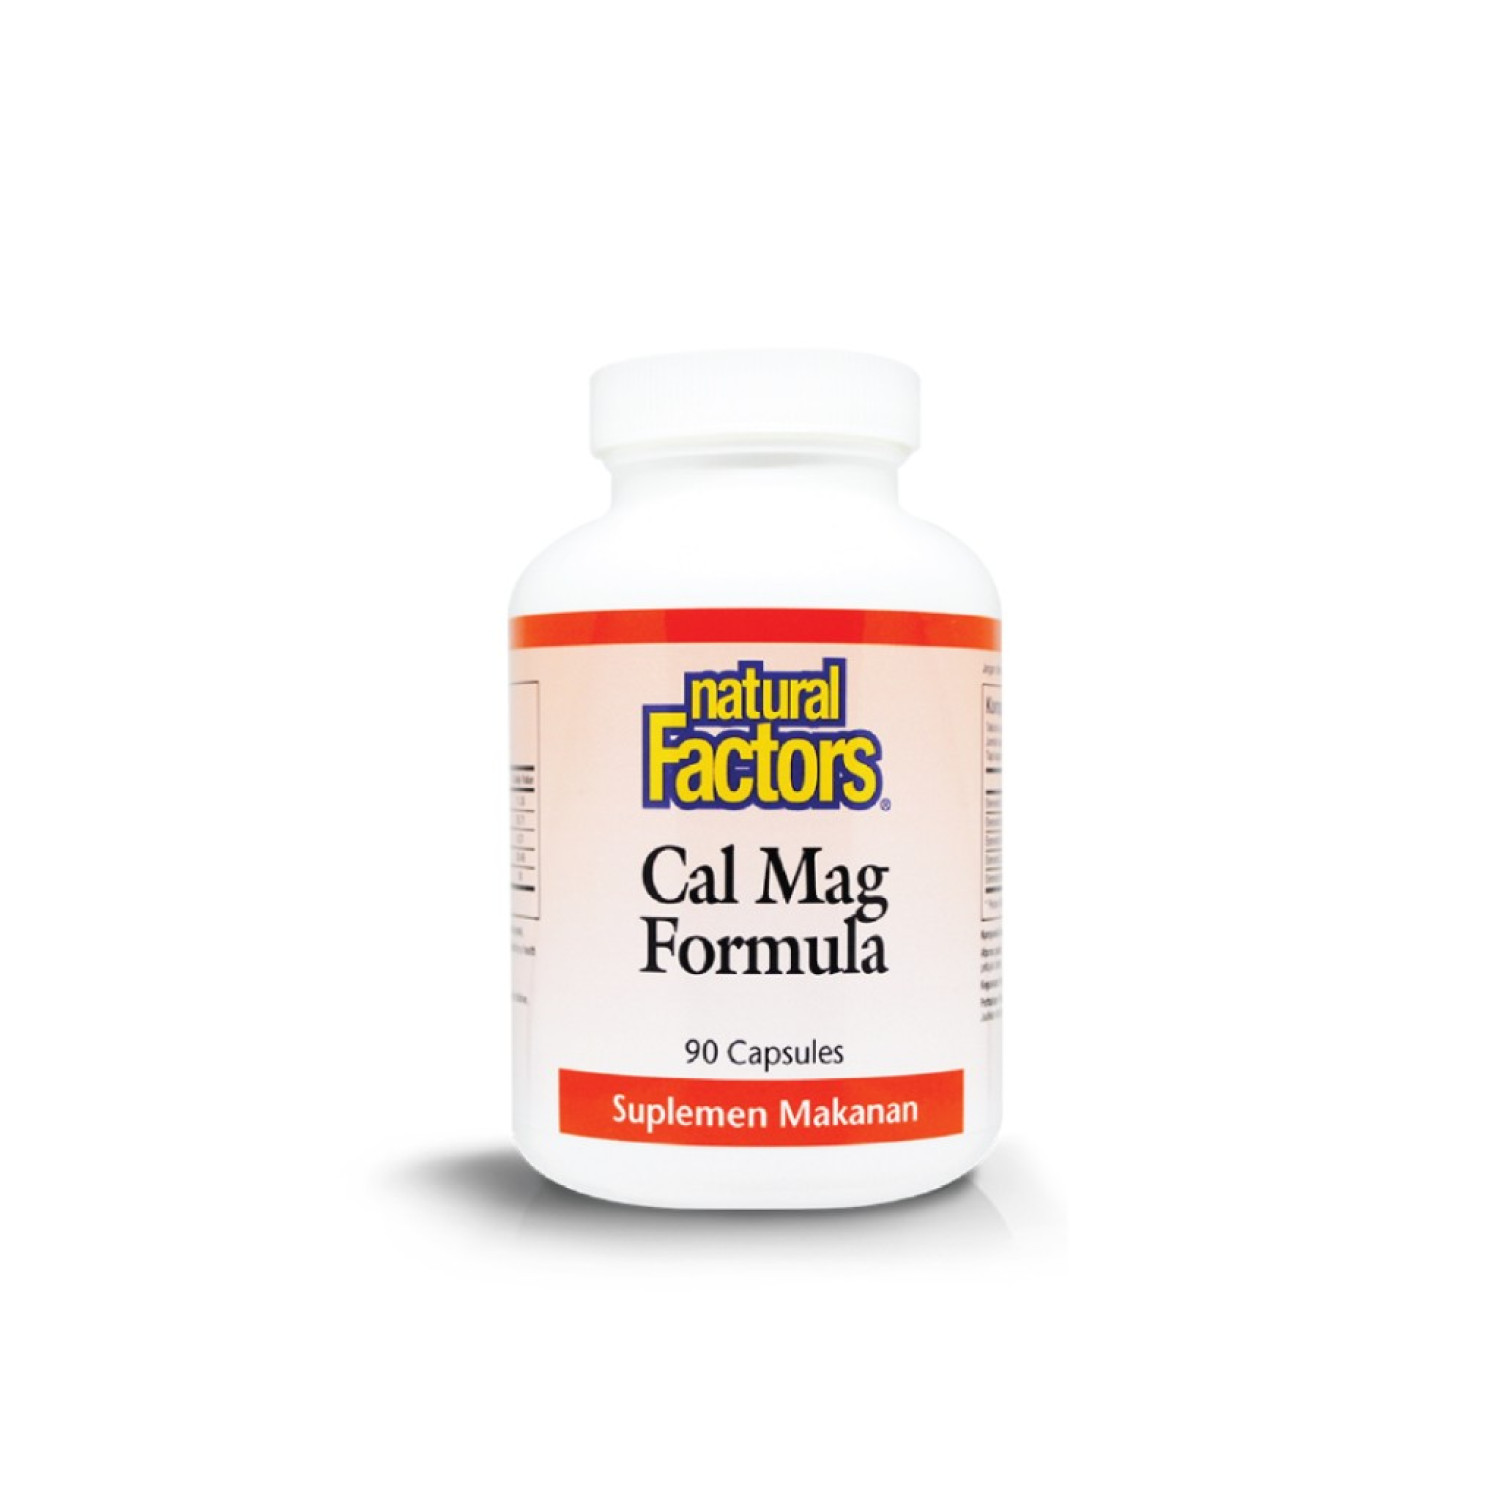 natural-factors-calmag-formula-90-capsules-exp-date-0723-654218a35b436.jpeg